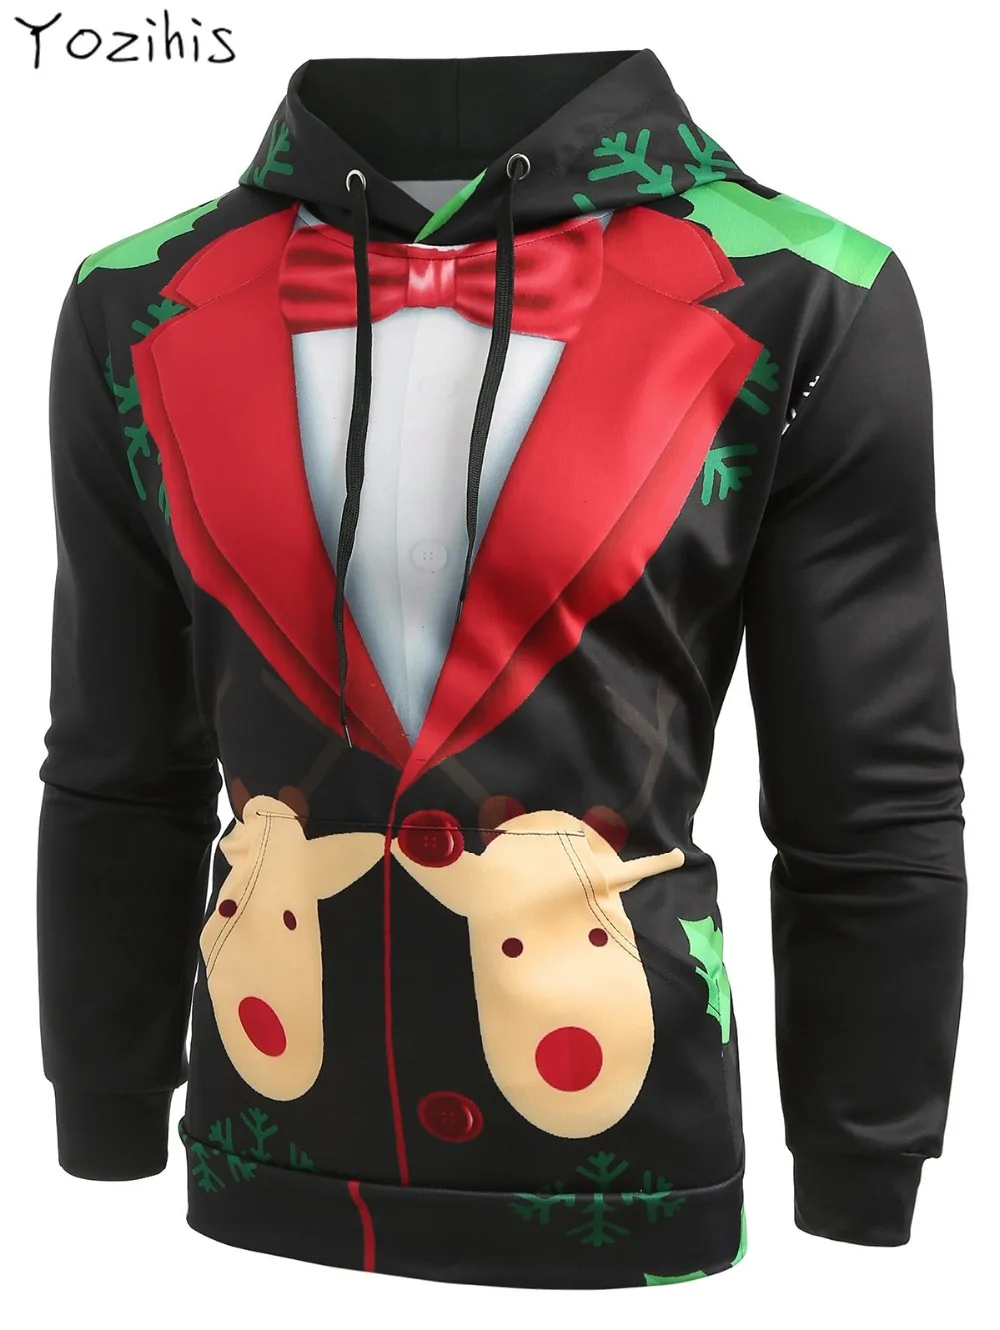 Yozihis Рождество искусственная костюм животных пуловер с капюшоном для мужчин бойфренд Осень Толстовка повседневное